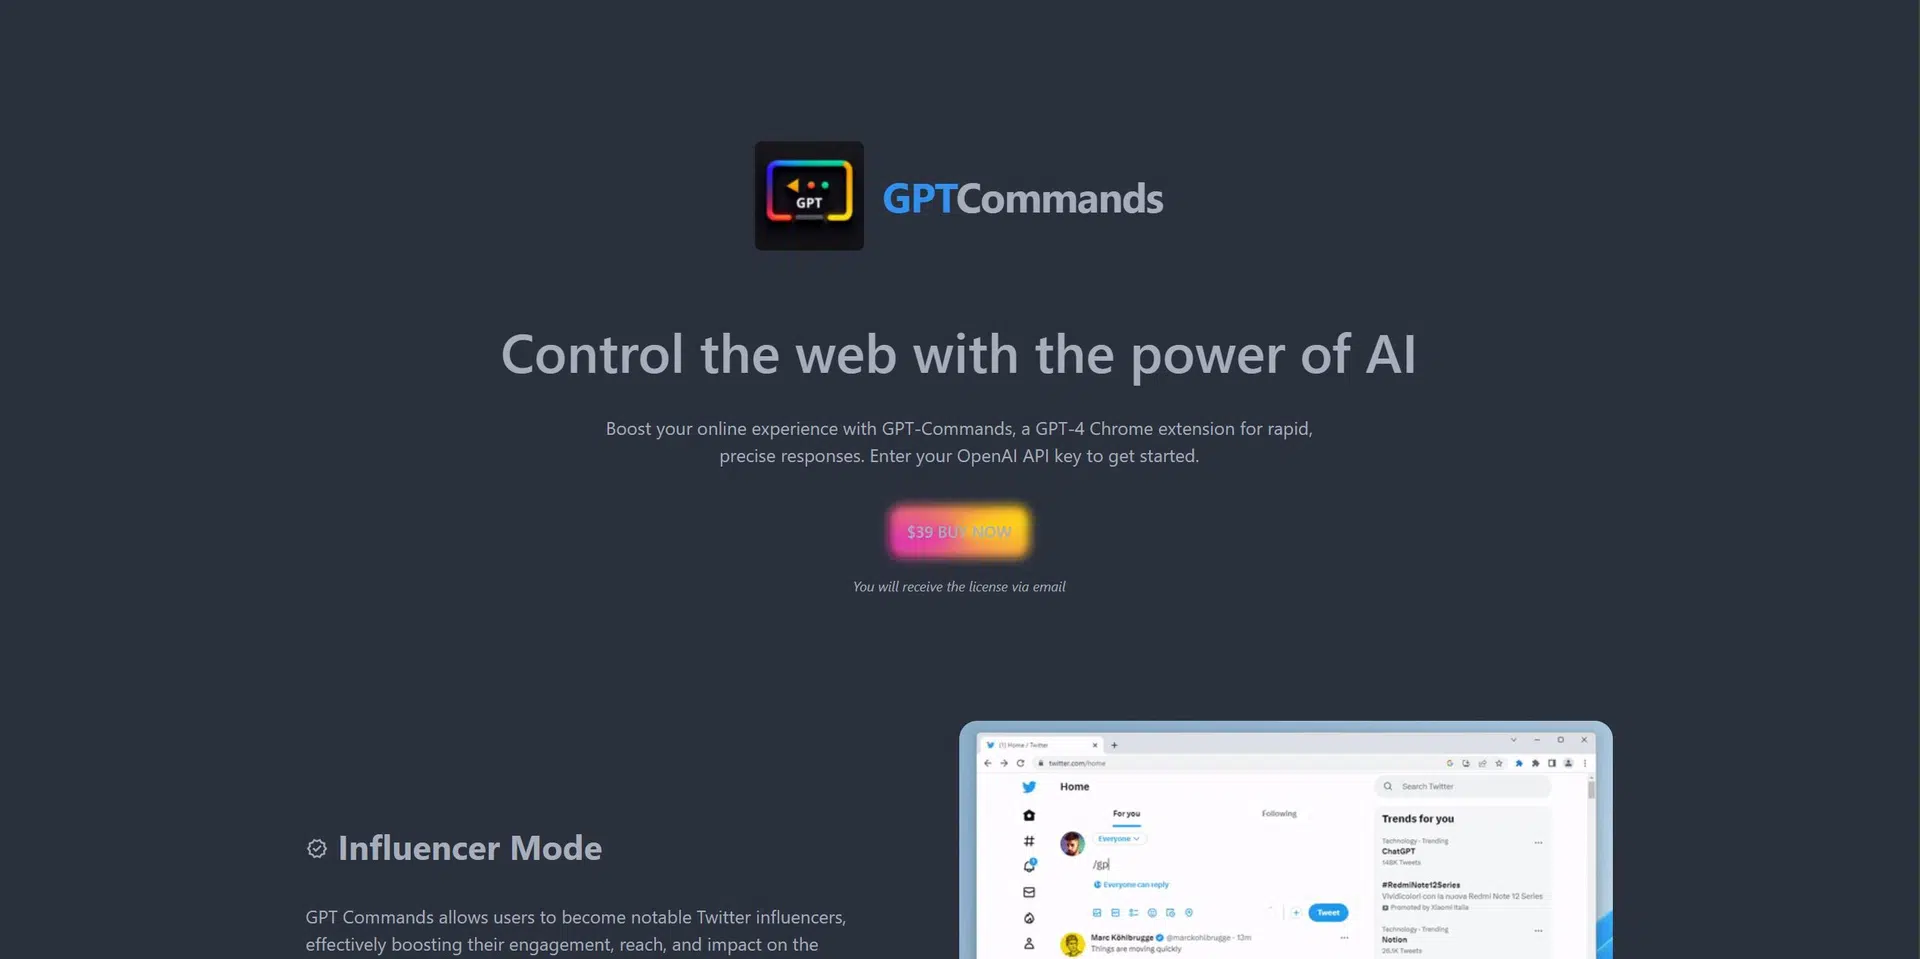 GPT Commandswebsite picture